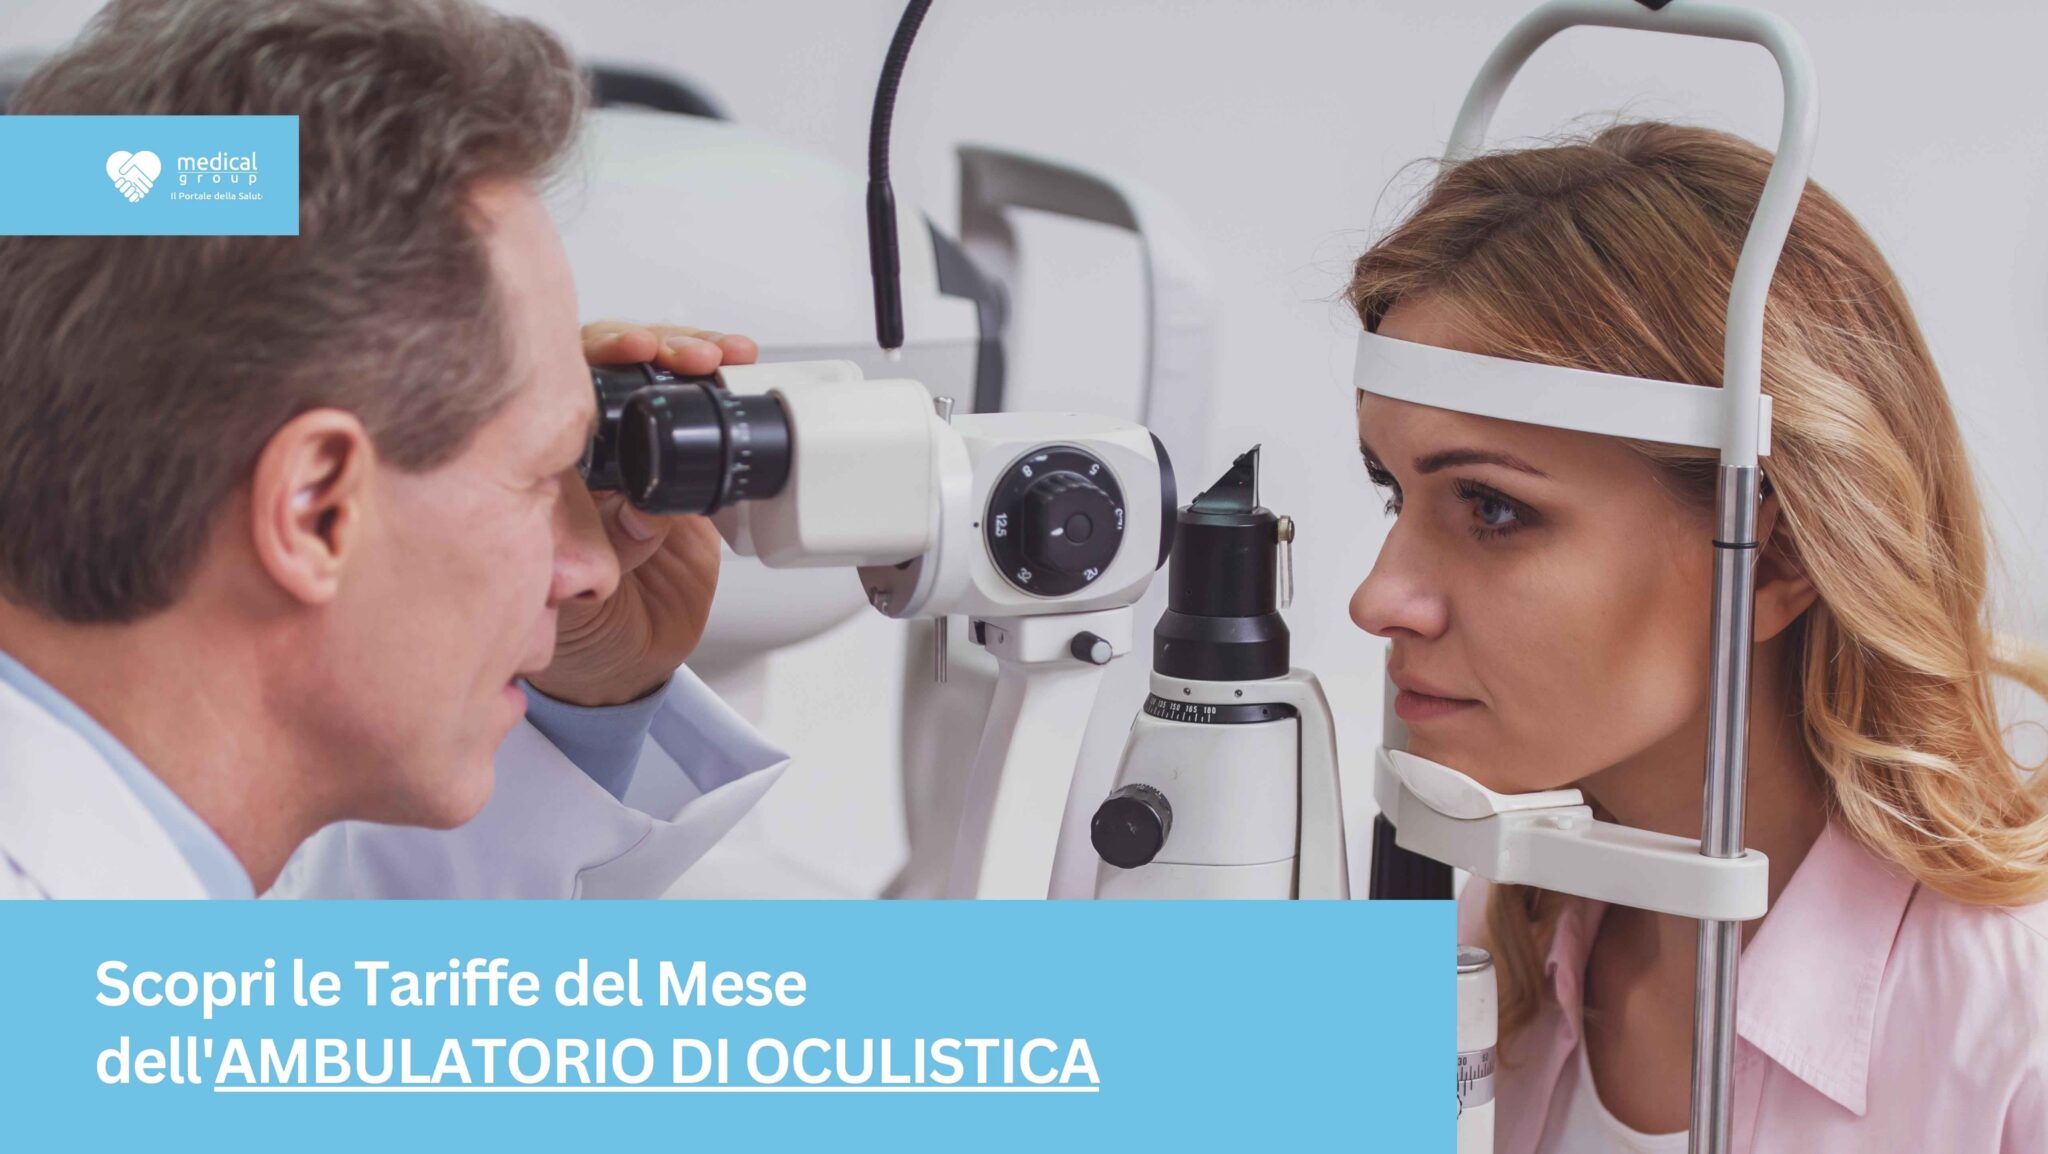 Tariffe del Mese Poliambulatorio Oculistica F-Medical Frosinone